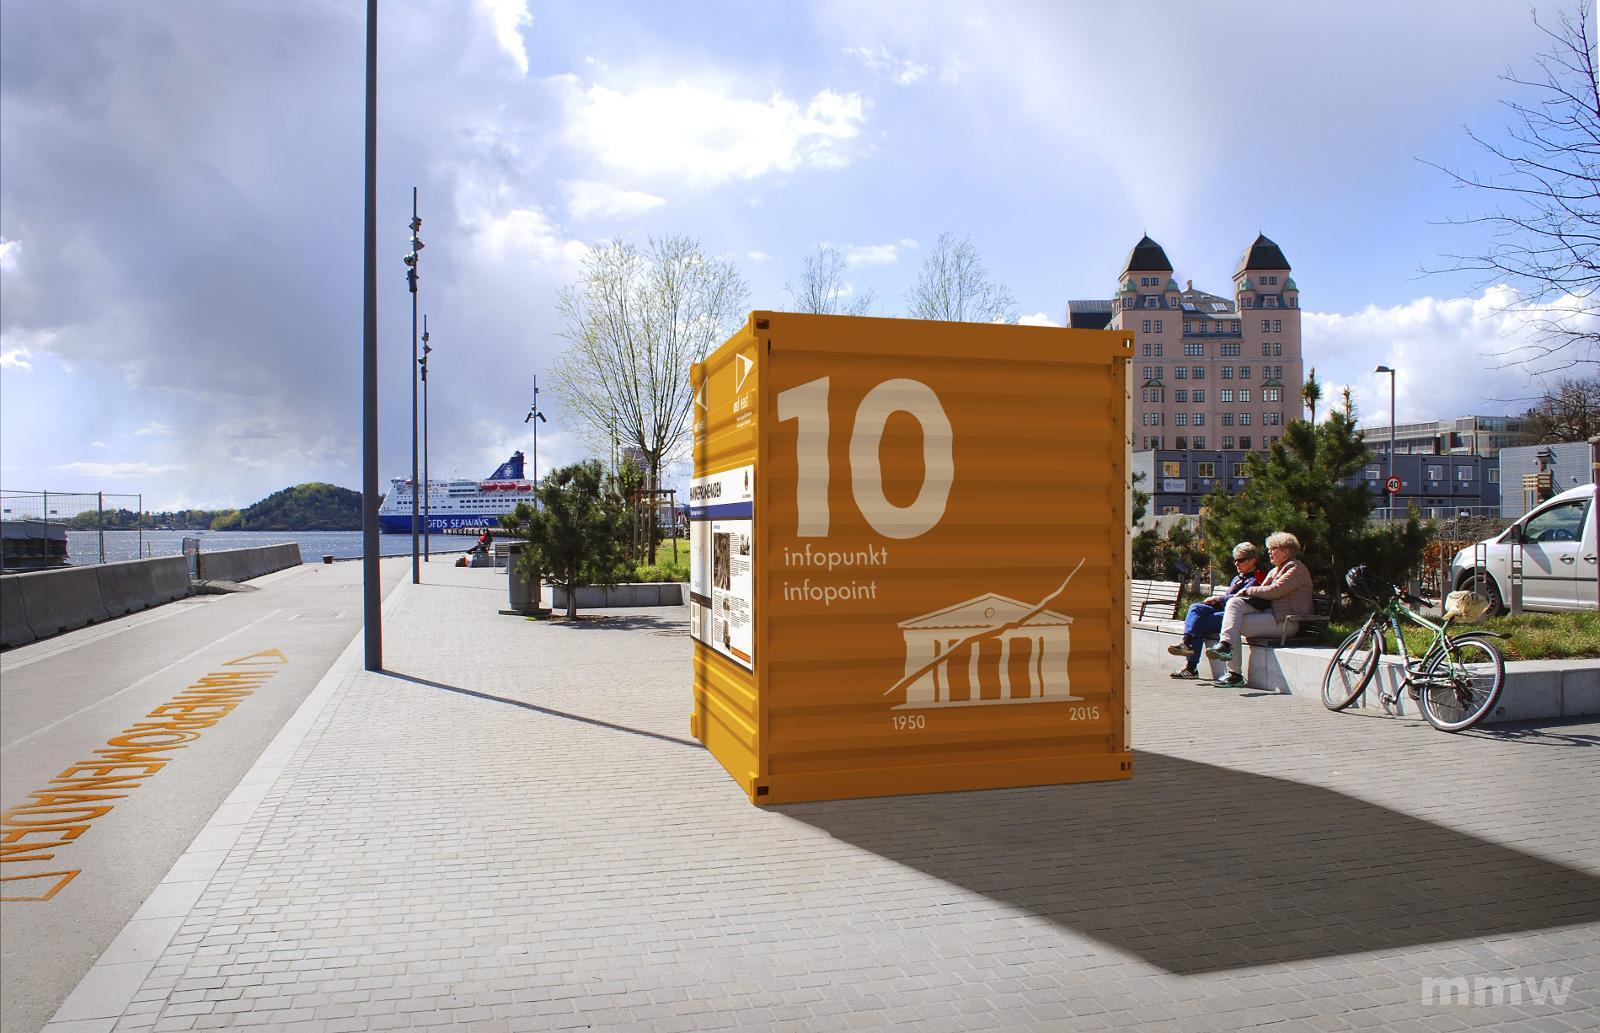 Slik skal containerne se ut, store og oransje med informasjon og med tegneserietegninger av Oslo på 60-tallet.